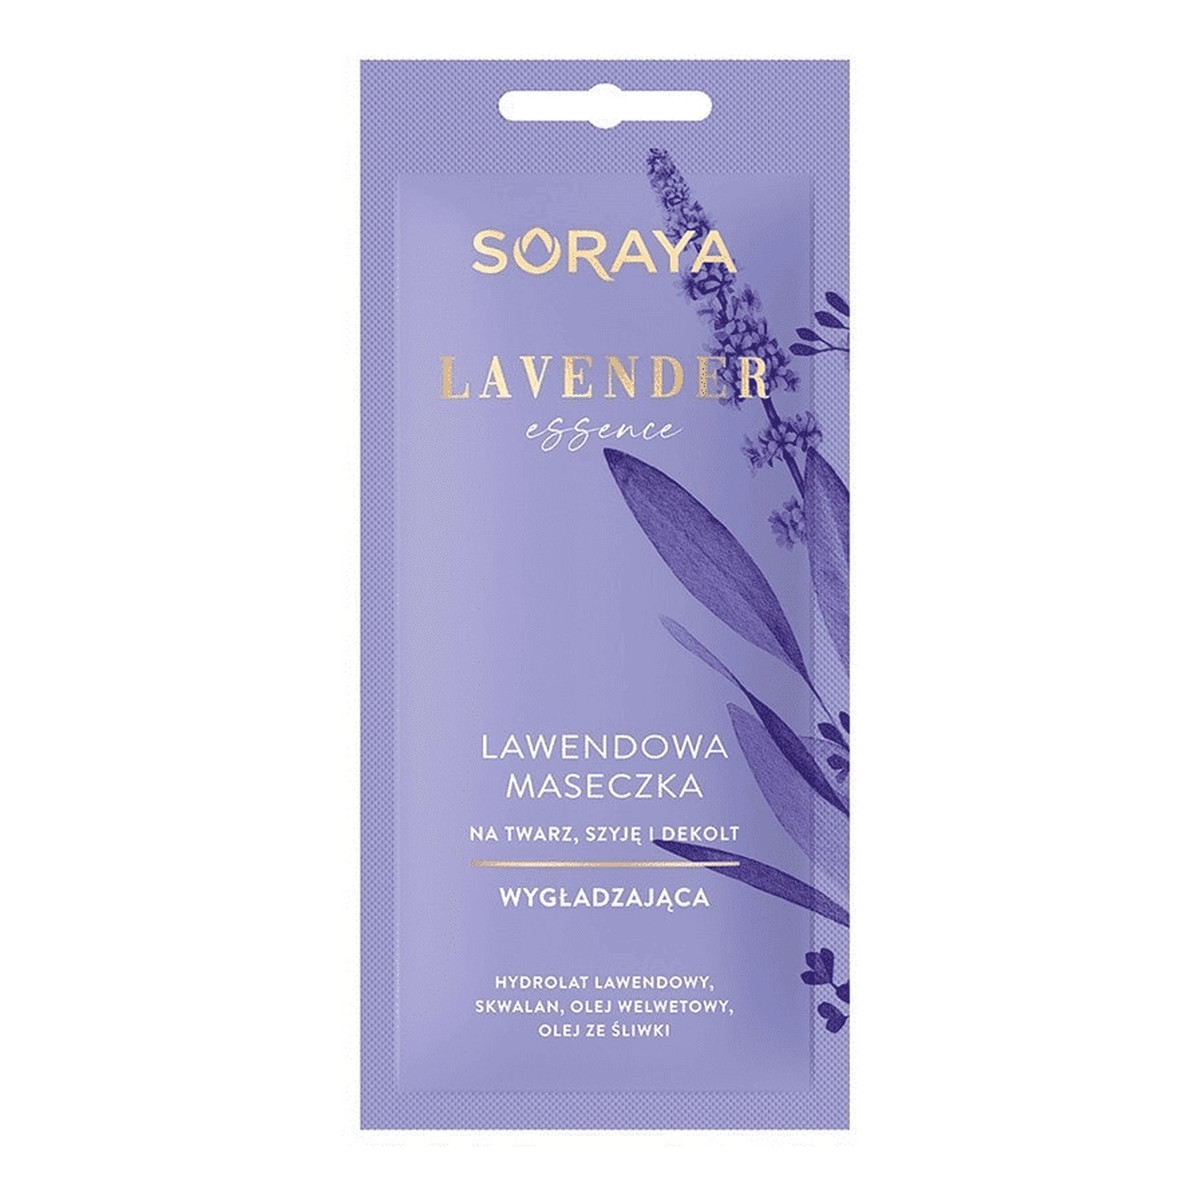 Soraya Lavender Essence Lawendowa maseczka wygładzająca na twarz szyję i dekolt 8ml